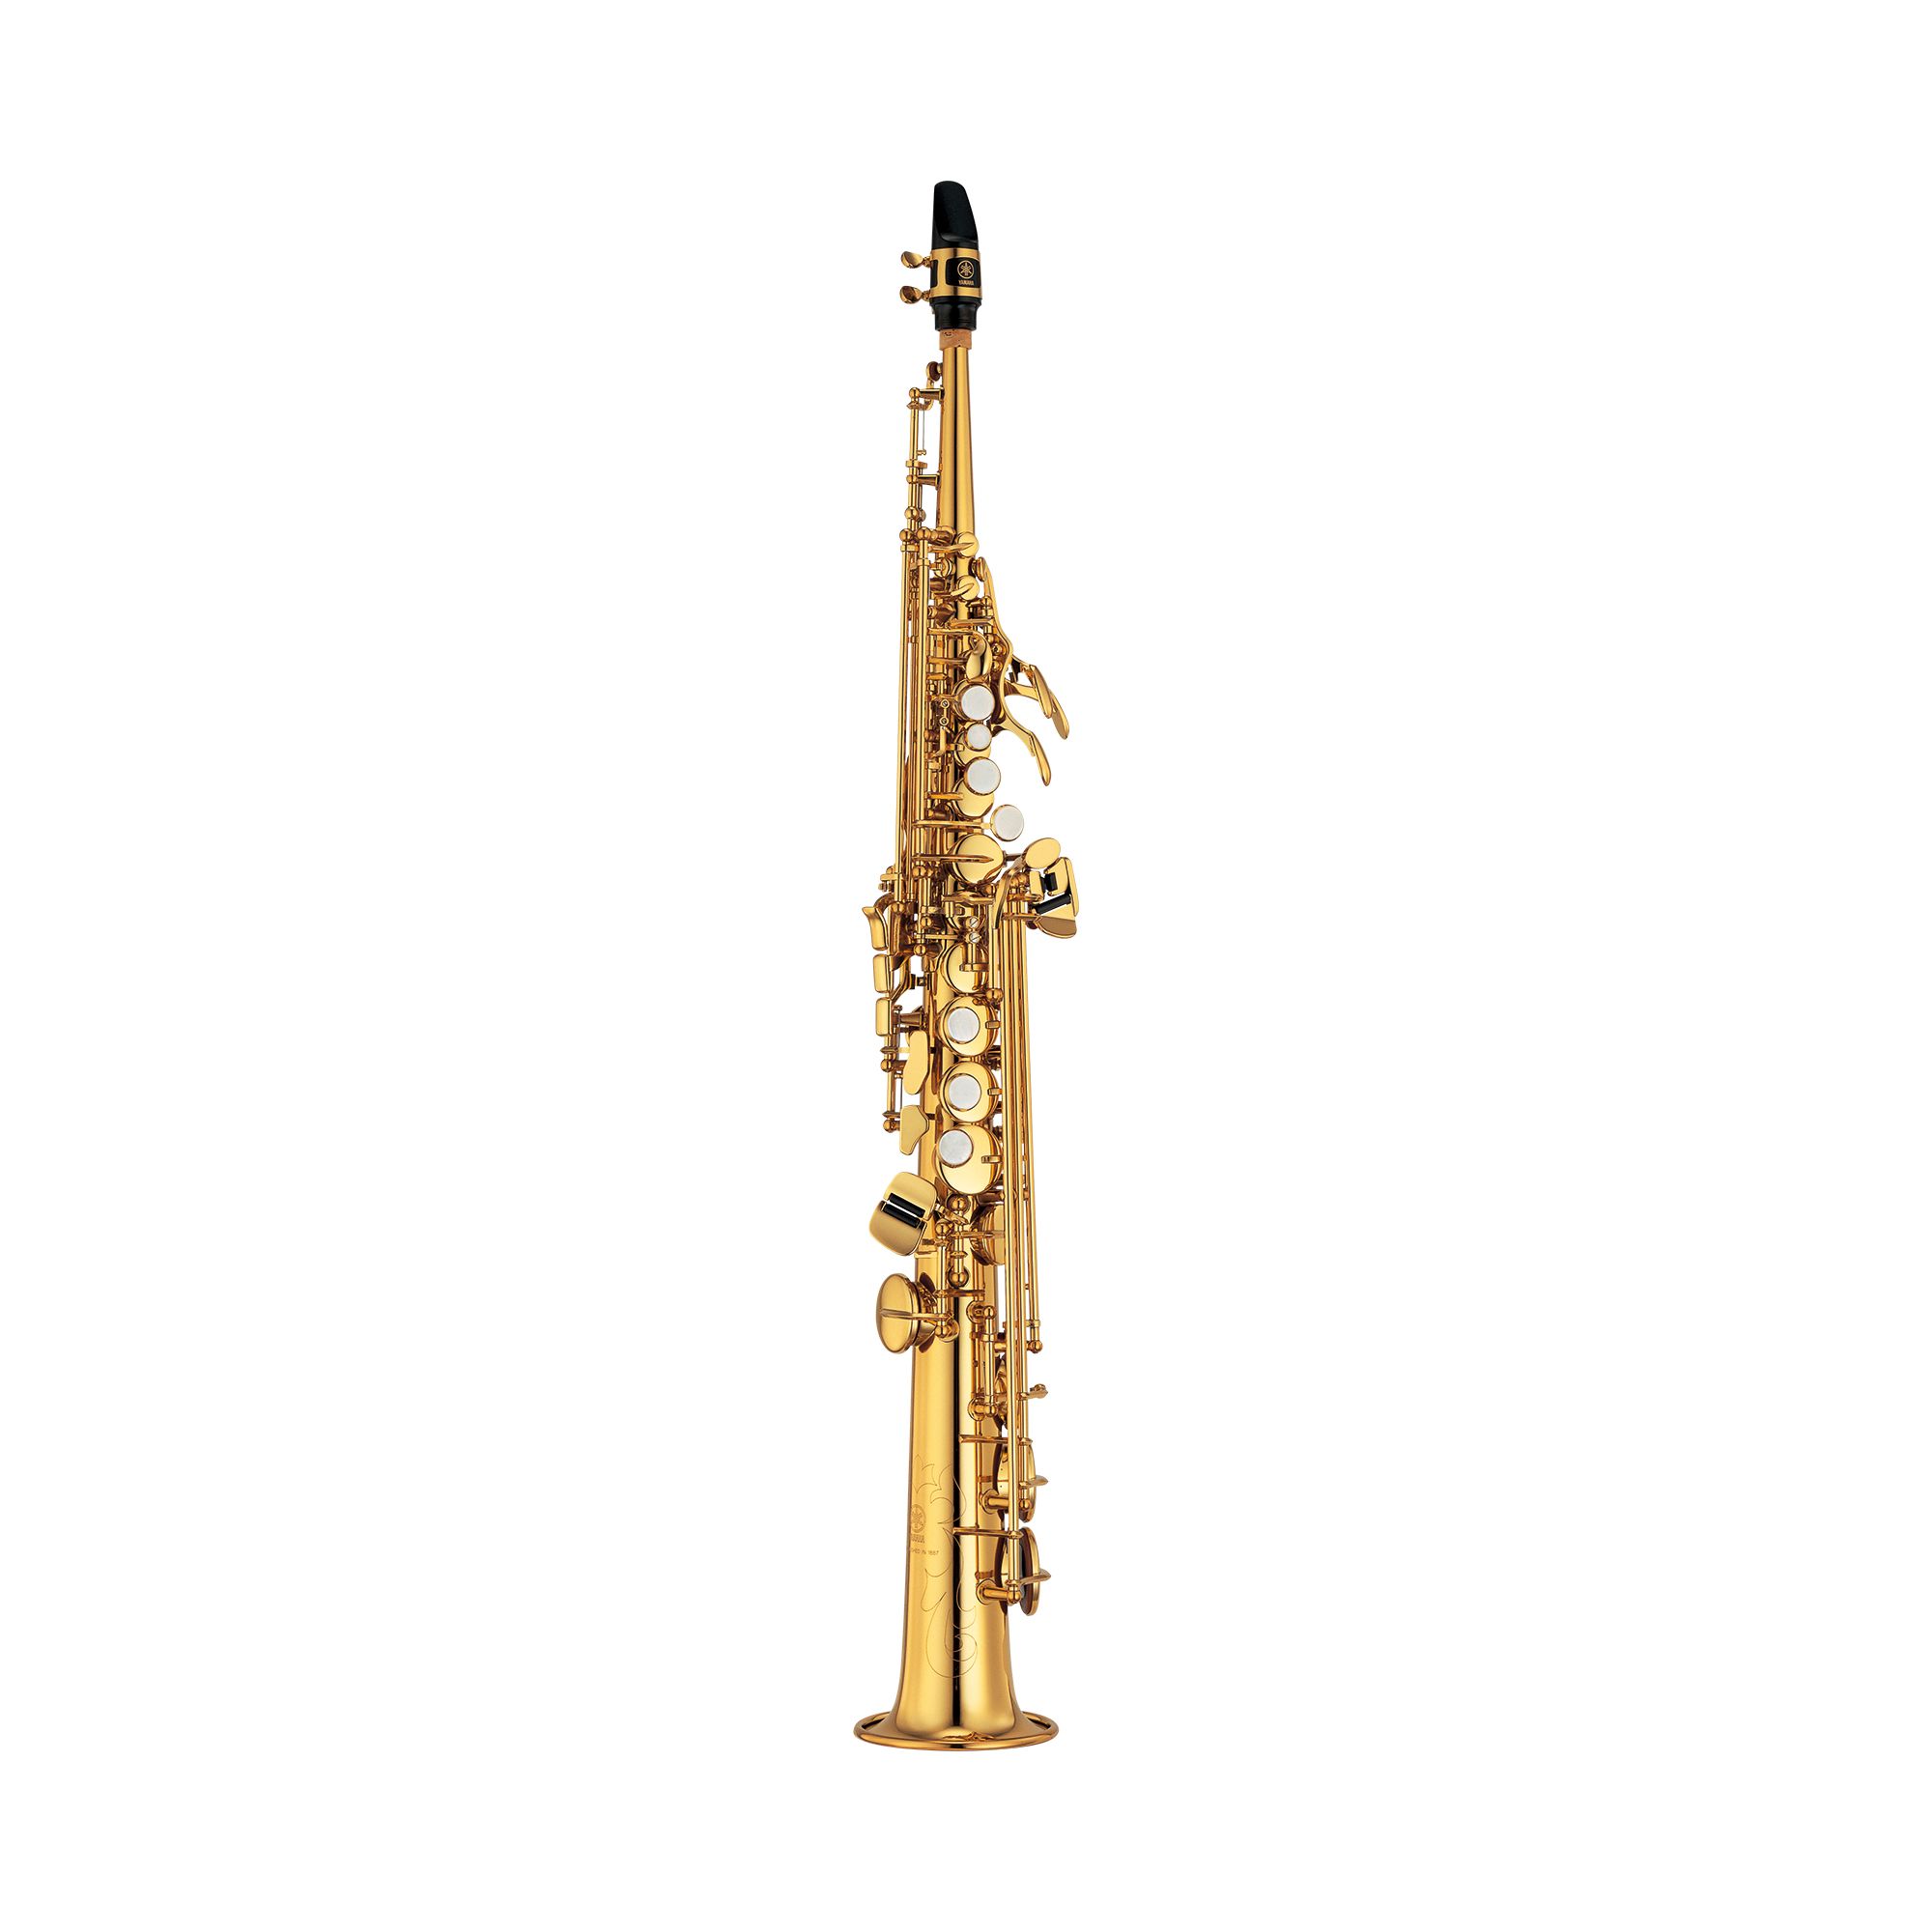 YSS-475II - Overview - Saxophones - Brass & Woodwinds - Musical 